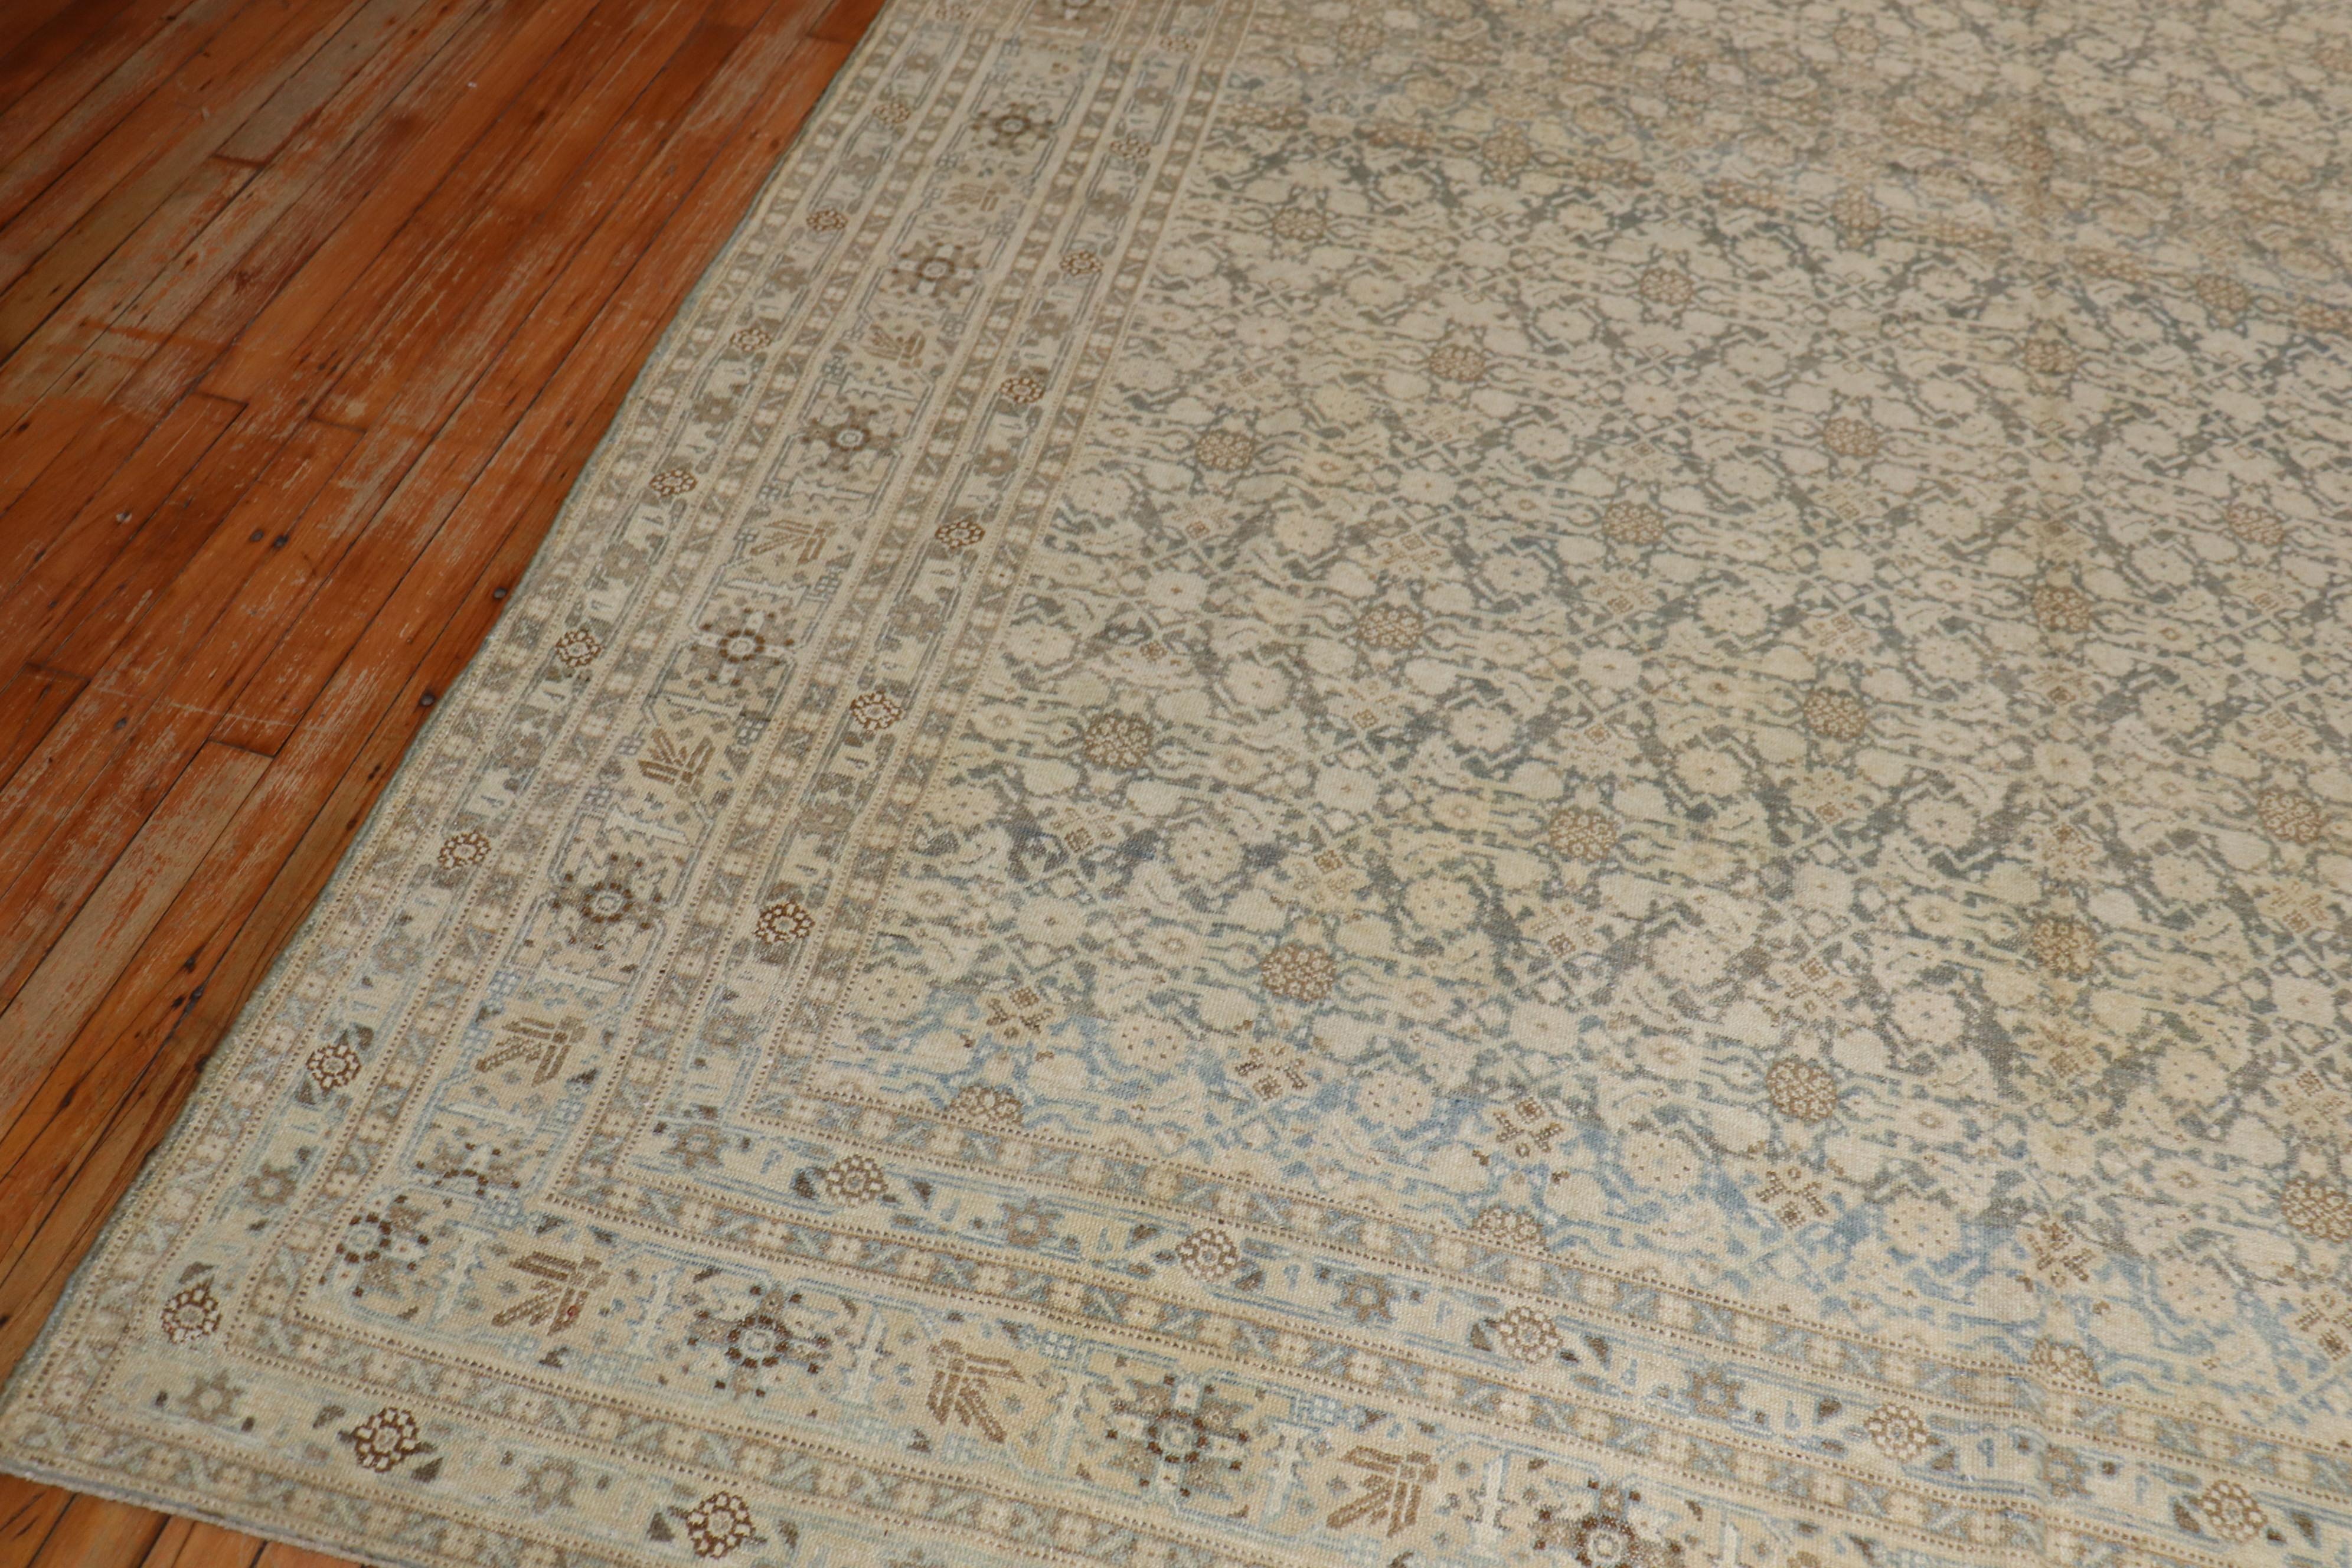 Un tapis persan Tabriz du début du 20e siècle avec votre motif classique herati en marron, vert, tan avec des touches de bleu clair à une extrémité

Mesures : 7'`11'' x 10'4''

Un Tabriz ancien peut être fabriqué en coton ou en soie et tissé comme